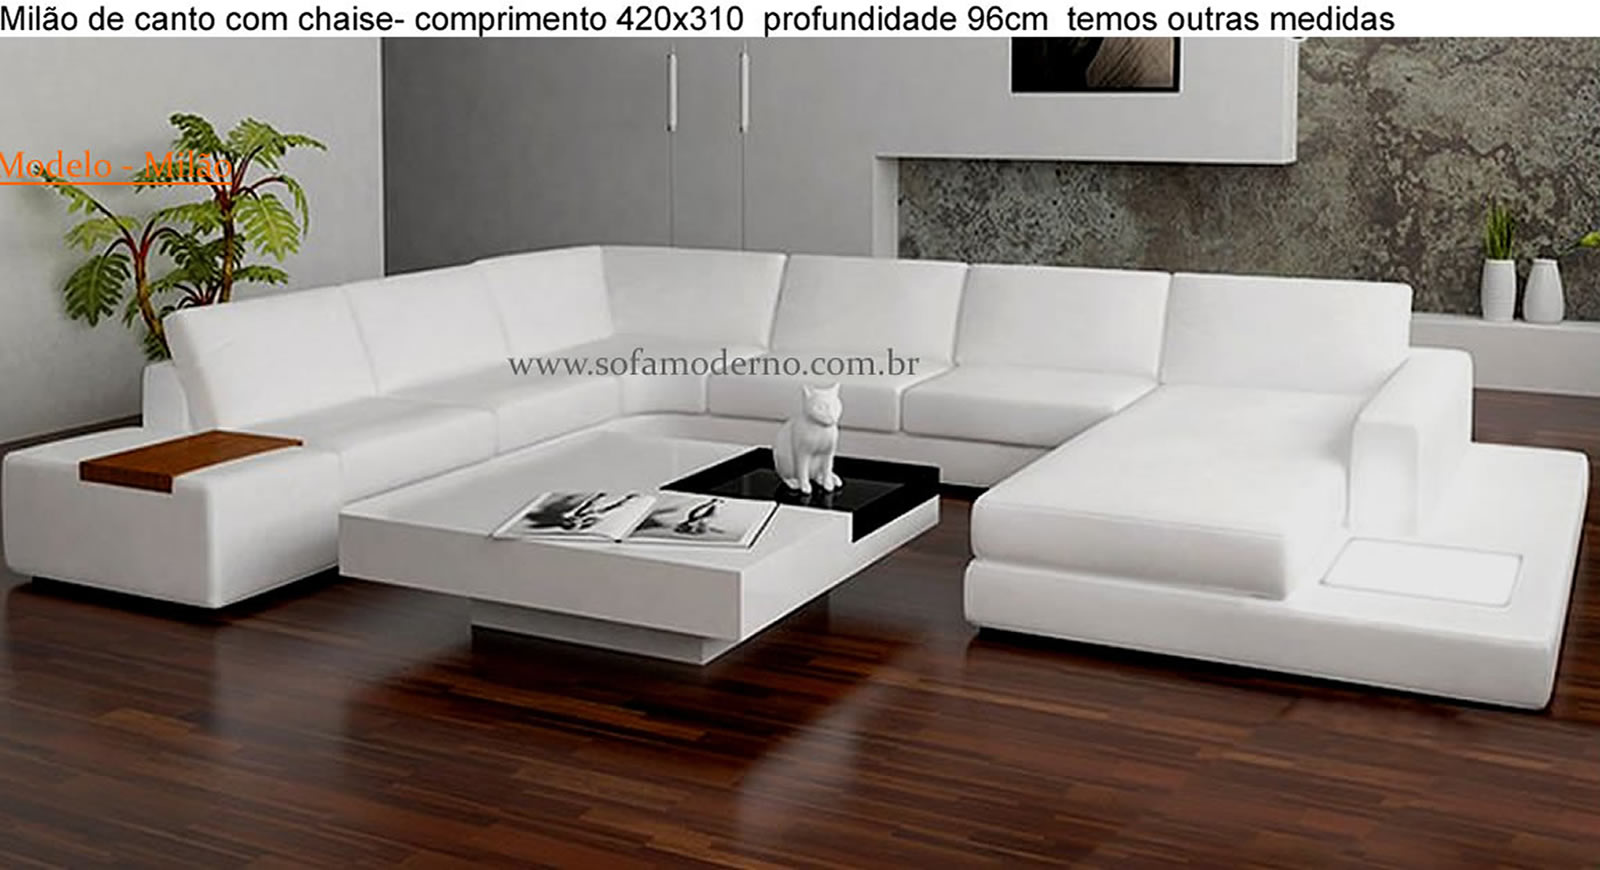 In most cases Percentage vein Modelos de sofás - Modernos - Luxuosos e Exclusivos| sofamoderno.com.br